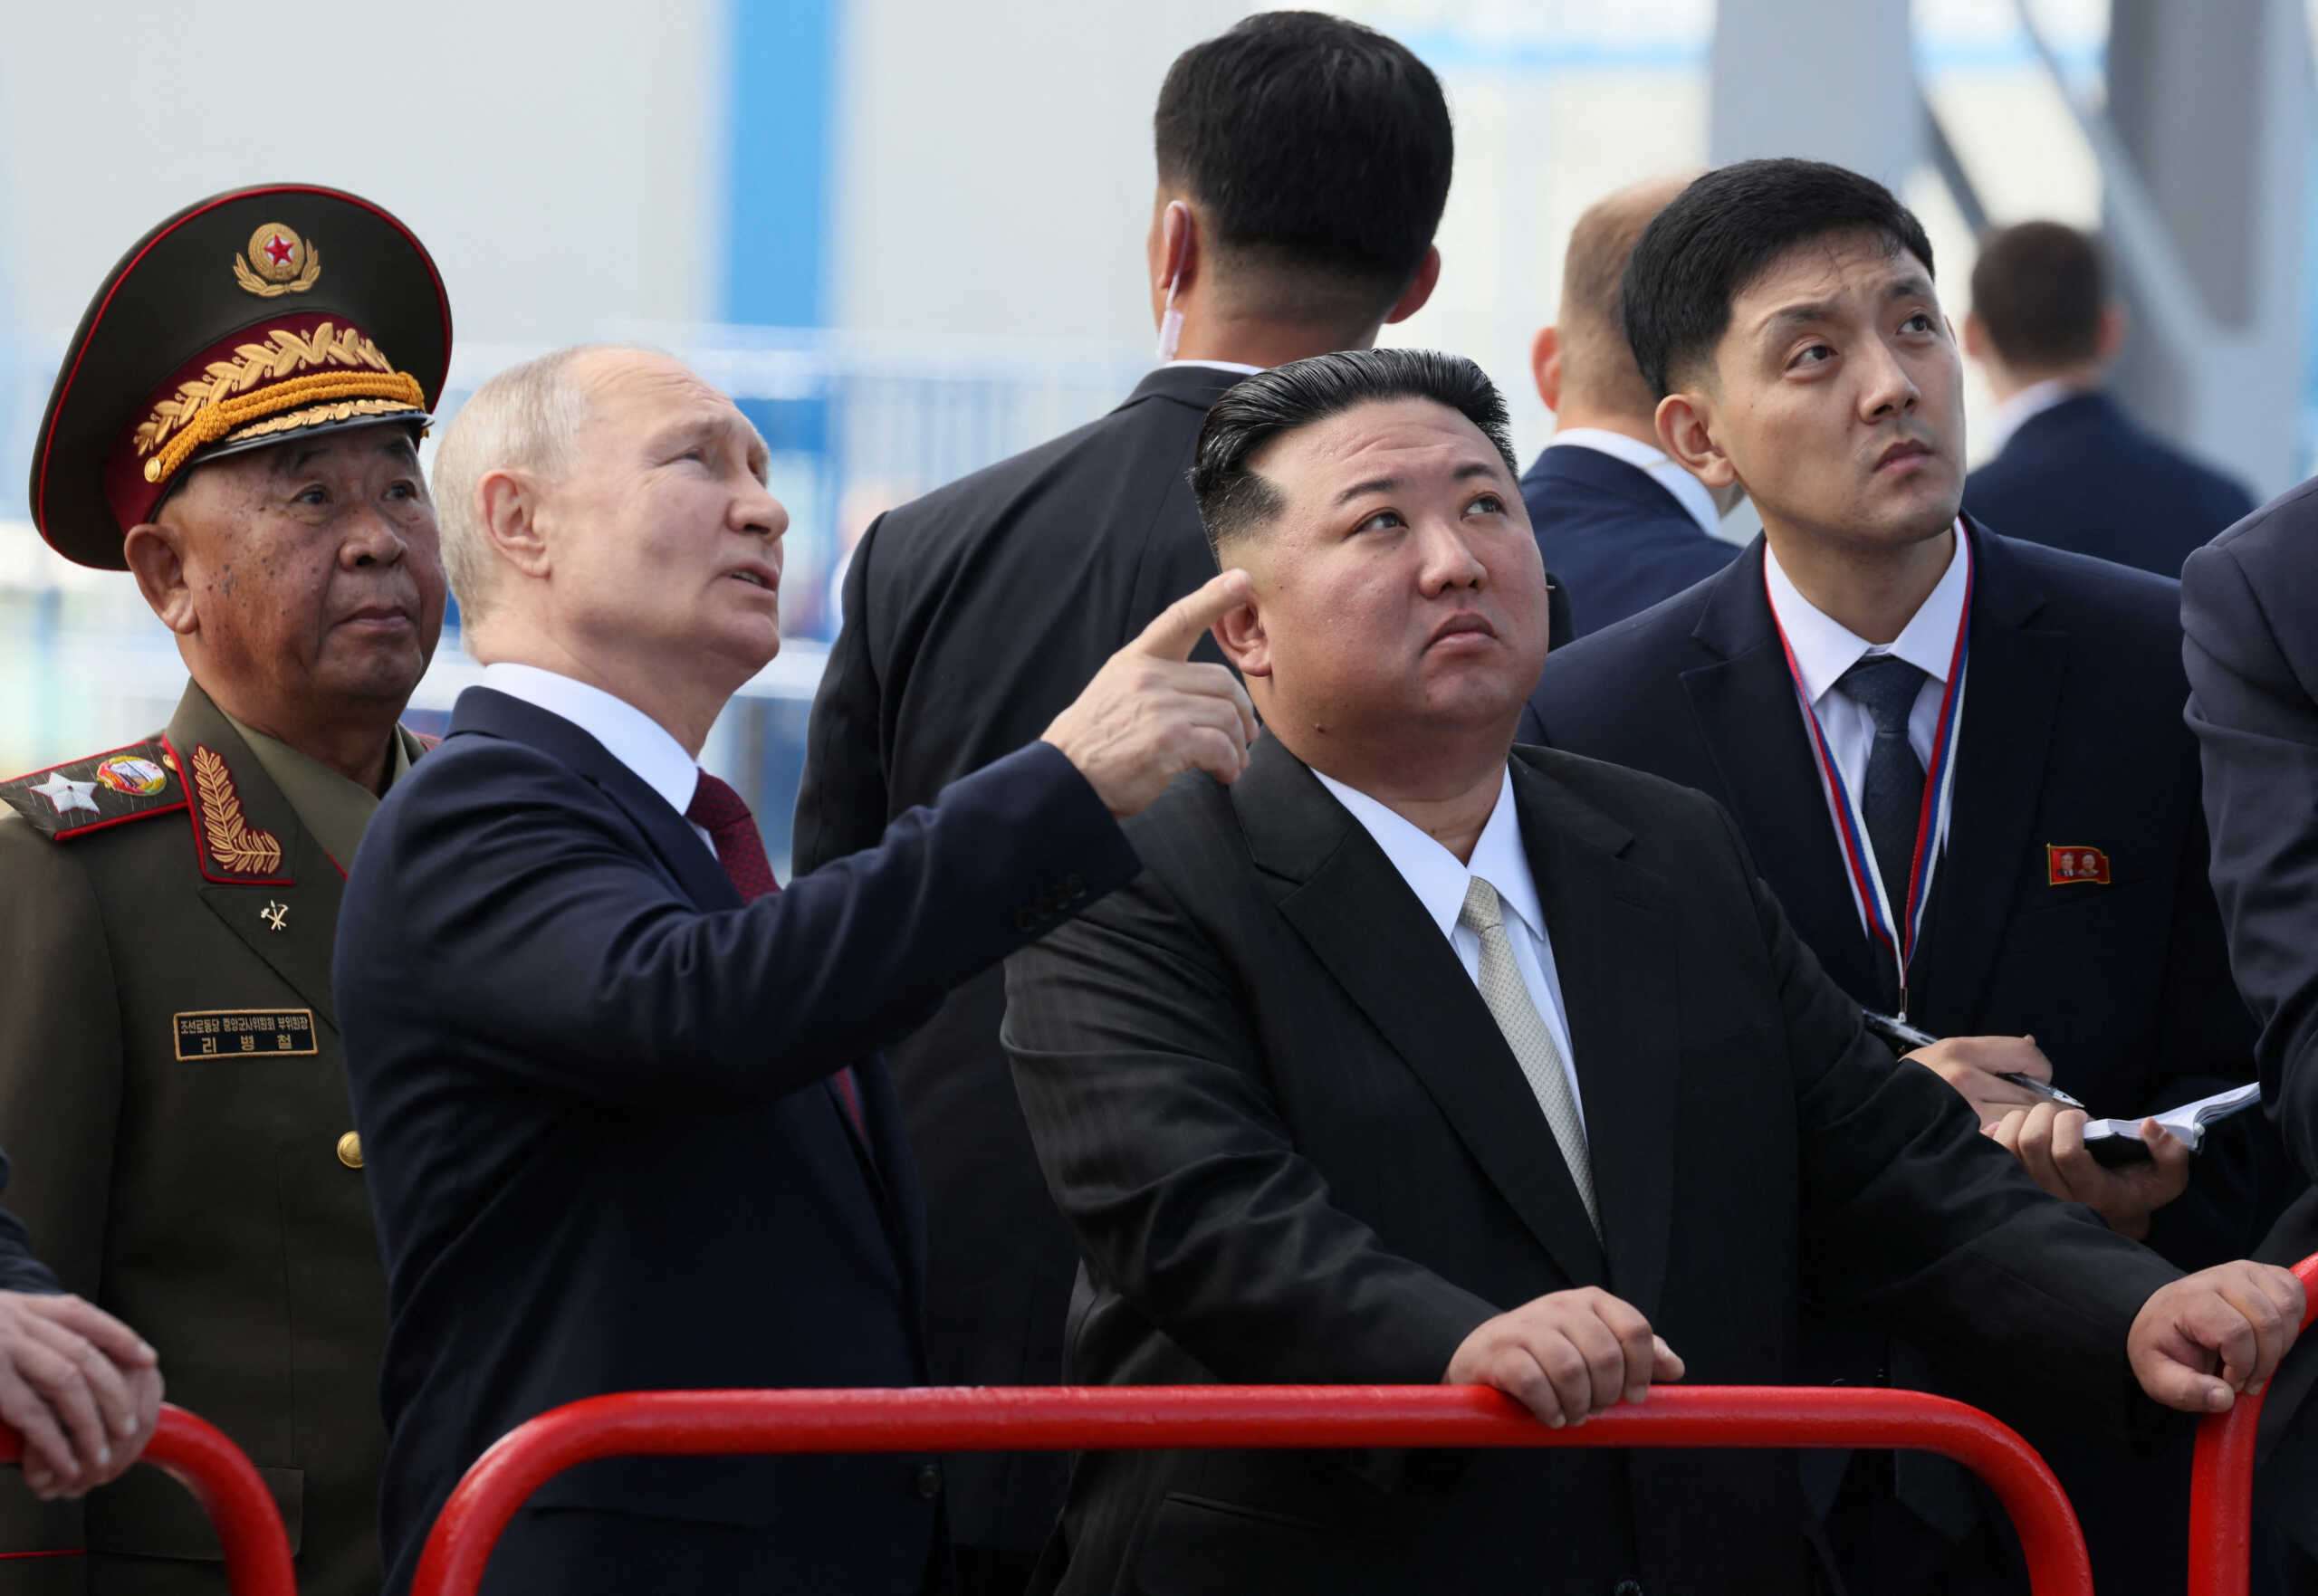 Ο Πούτιν «αποδέχθηκε με χαρά» την πρόσκληση του Κιμ Γιονγκ Ουν να επισκεφθεί τη χώρα του